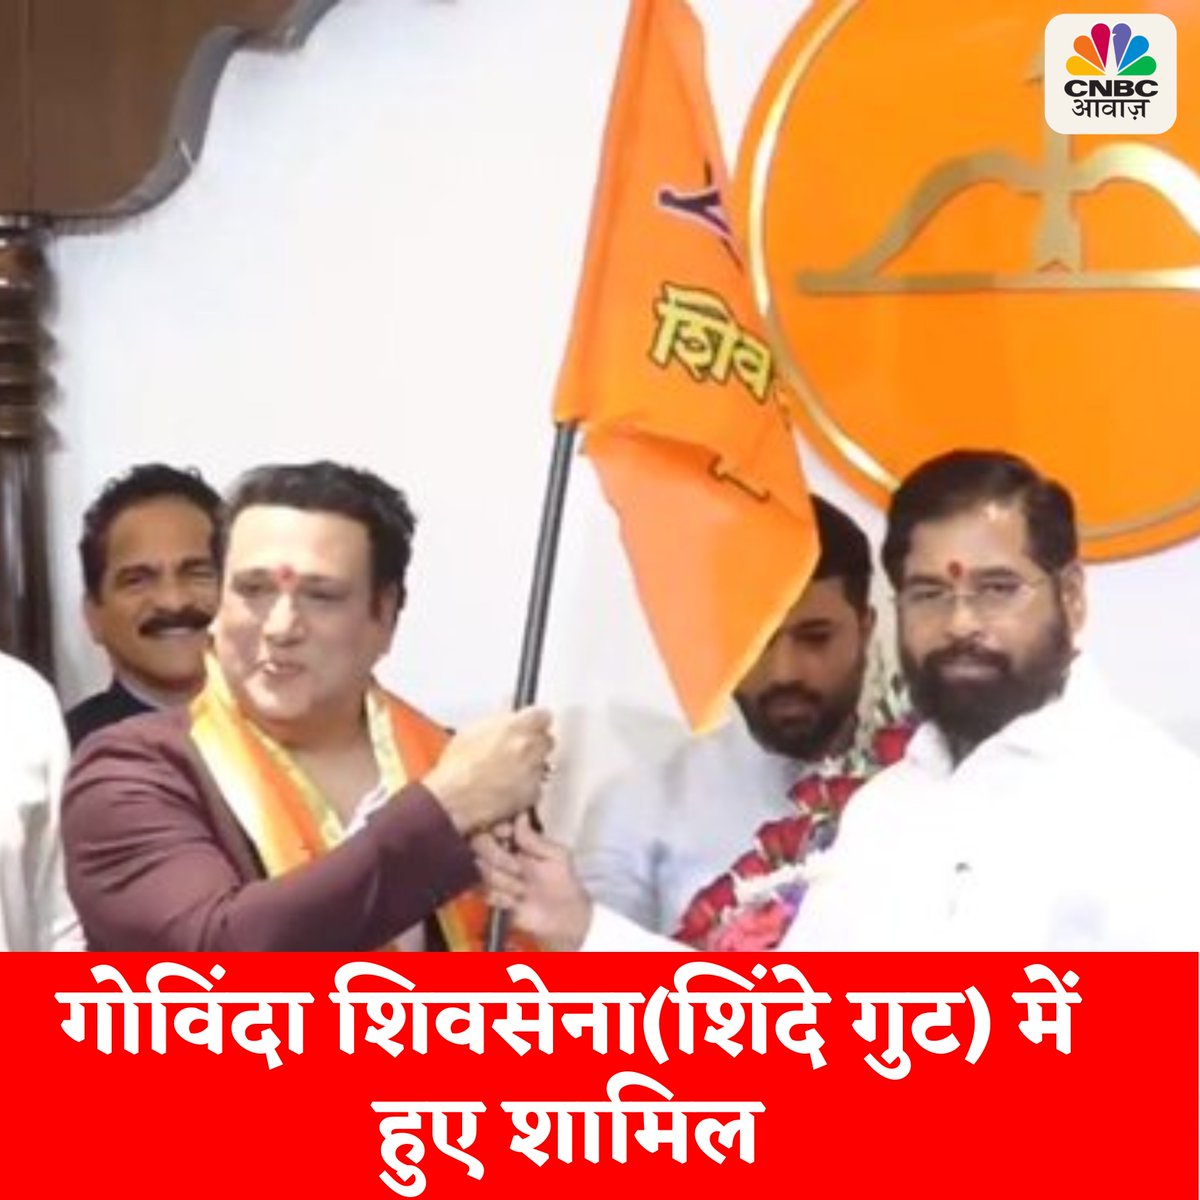 मशहूर अभिनेता गोविंदा शिवसेना(शिंदे गुट) में हुए शामिल, लड़ सकते हैं लोकसभा चुनाव.....कांग्रेस से रह चुके हैं सांसद #Govinda #Shivsena #Mumbai #LokSabhaElection2024